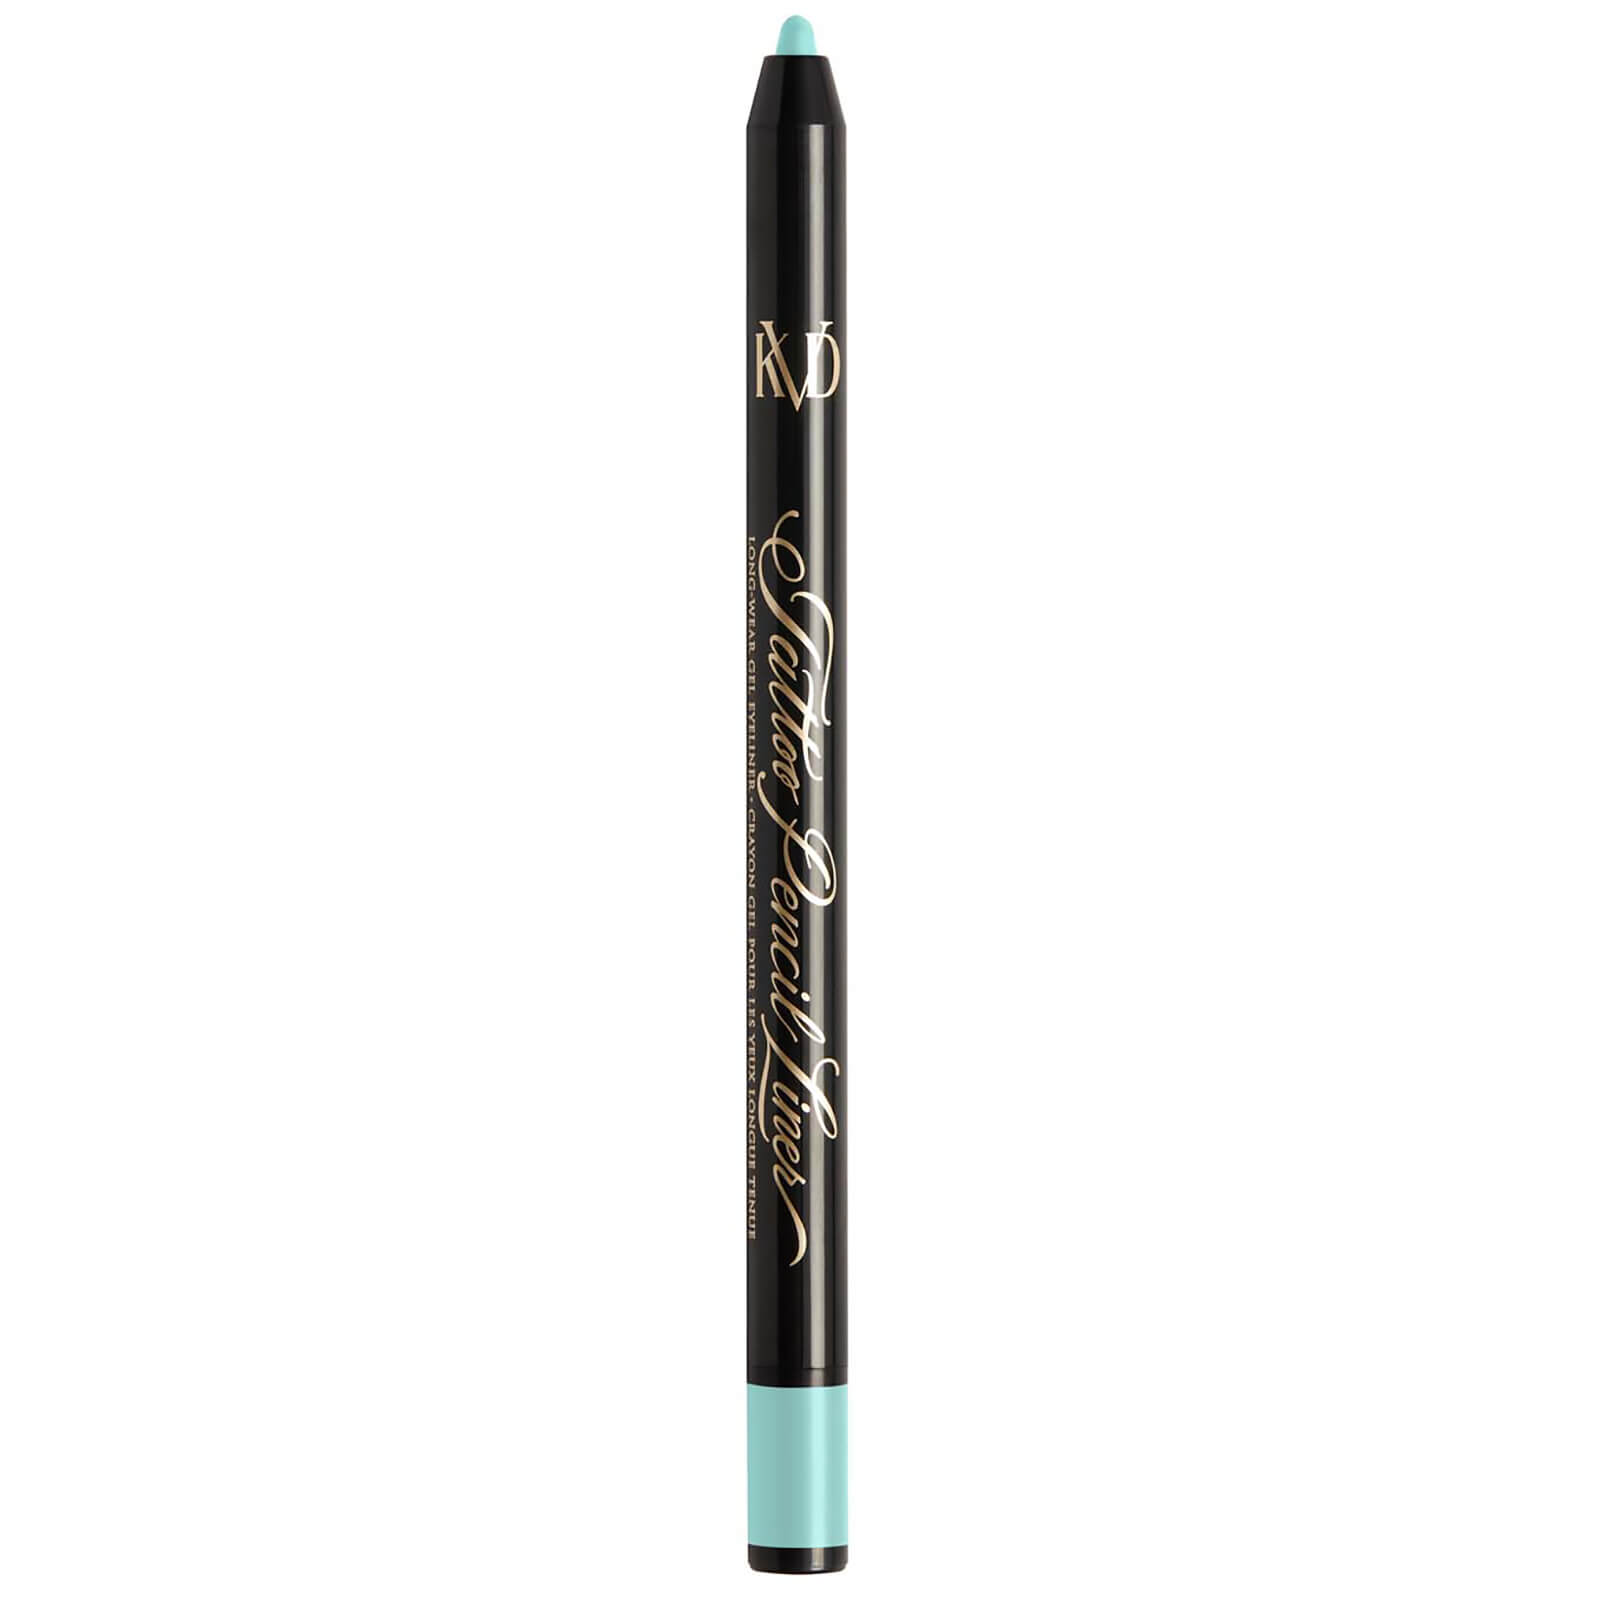 KVD Beauty Tattoo Pencil Liner Long-Wear Gel Eyeliner 0.5g (Various Shades) - Jadeite Blue 120